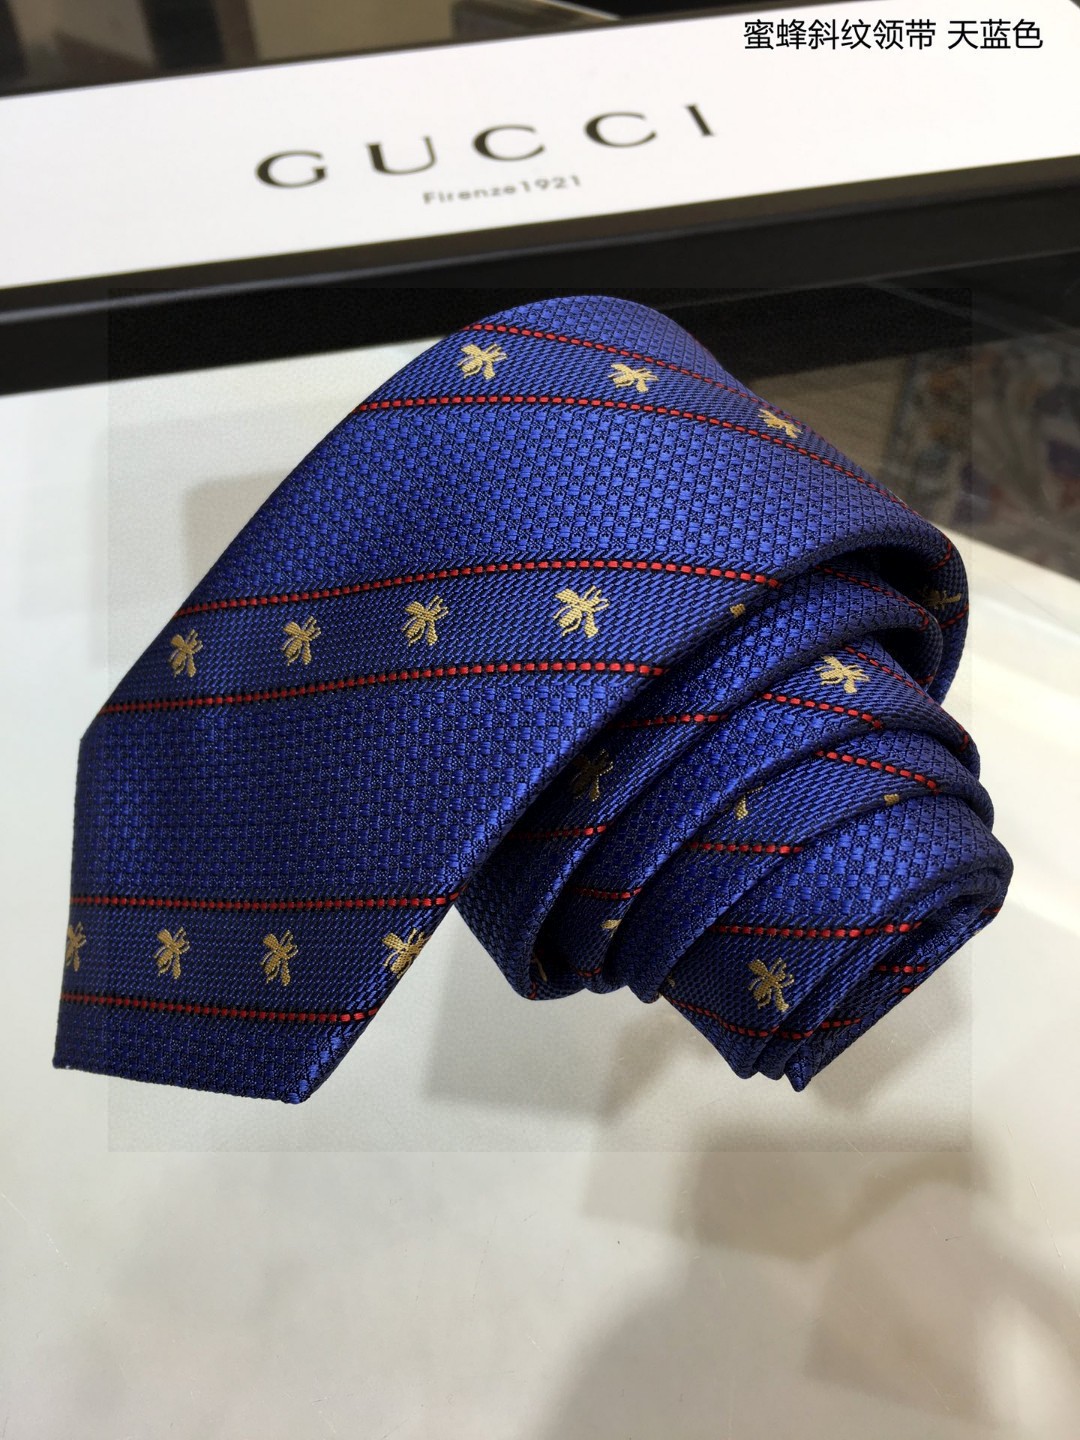 上新特价G家男士领带系列蜜蜂斜纹领带稀有展现精湛手工与时尚优雅的理想选择这款领带将标志性的主题动物小蜜蜂